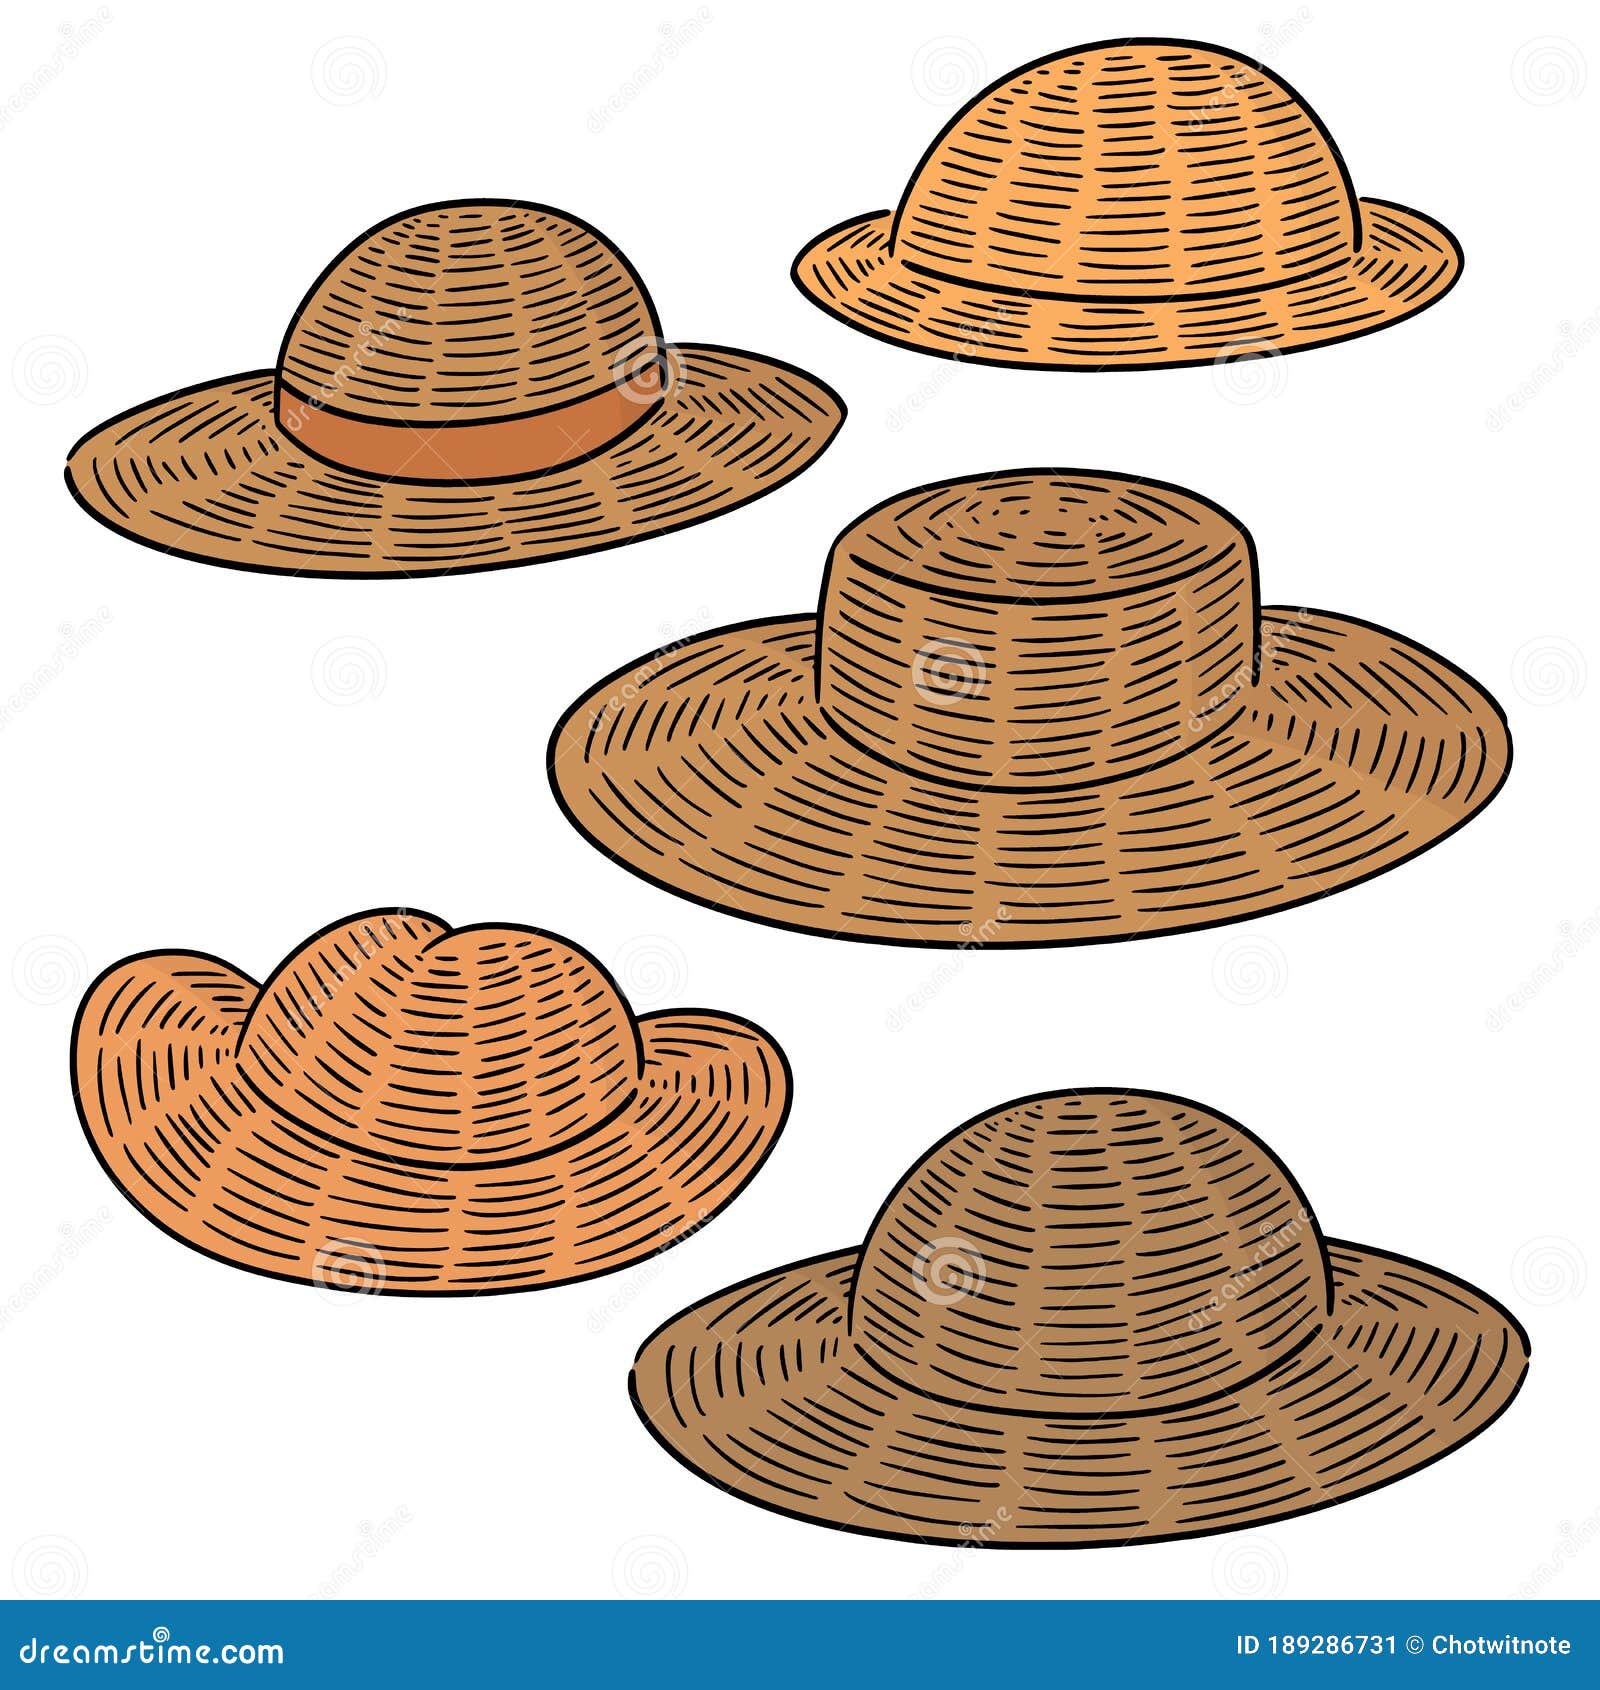 412,258 imágenes, fotos de stock, objetos en 3D y vectores sobre Sombrero  de paja